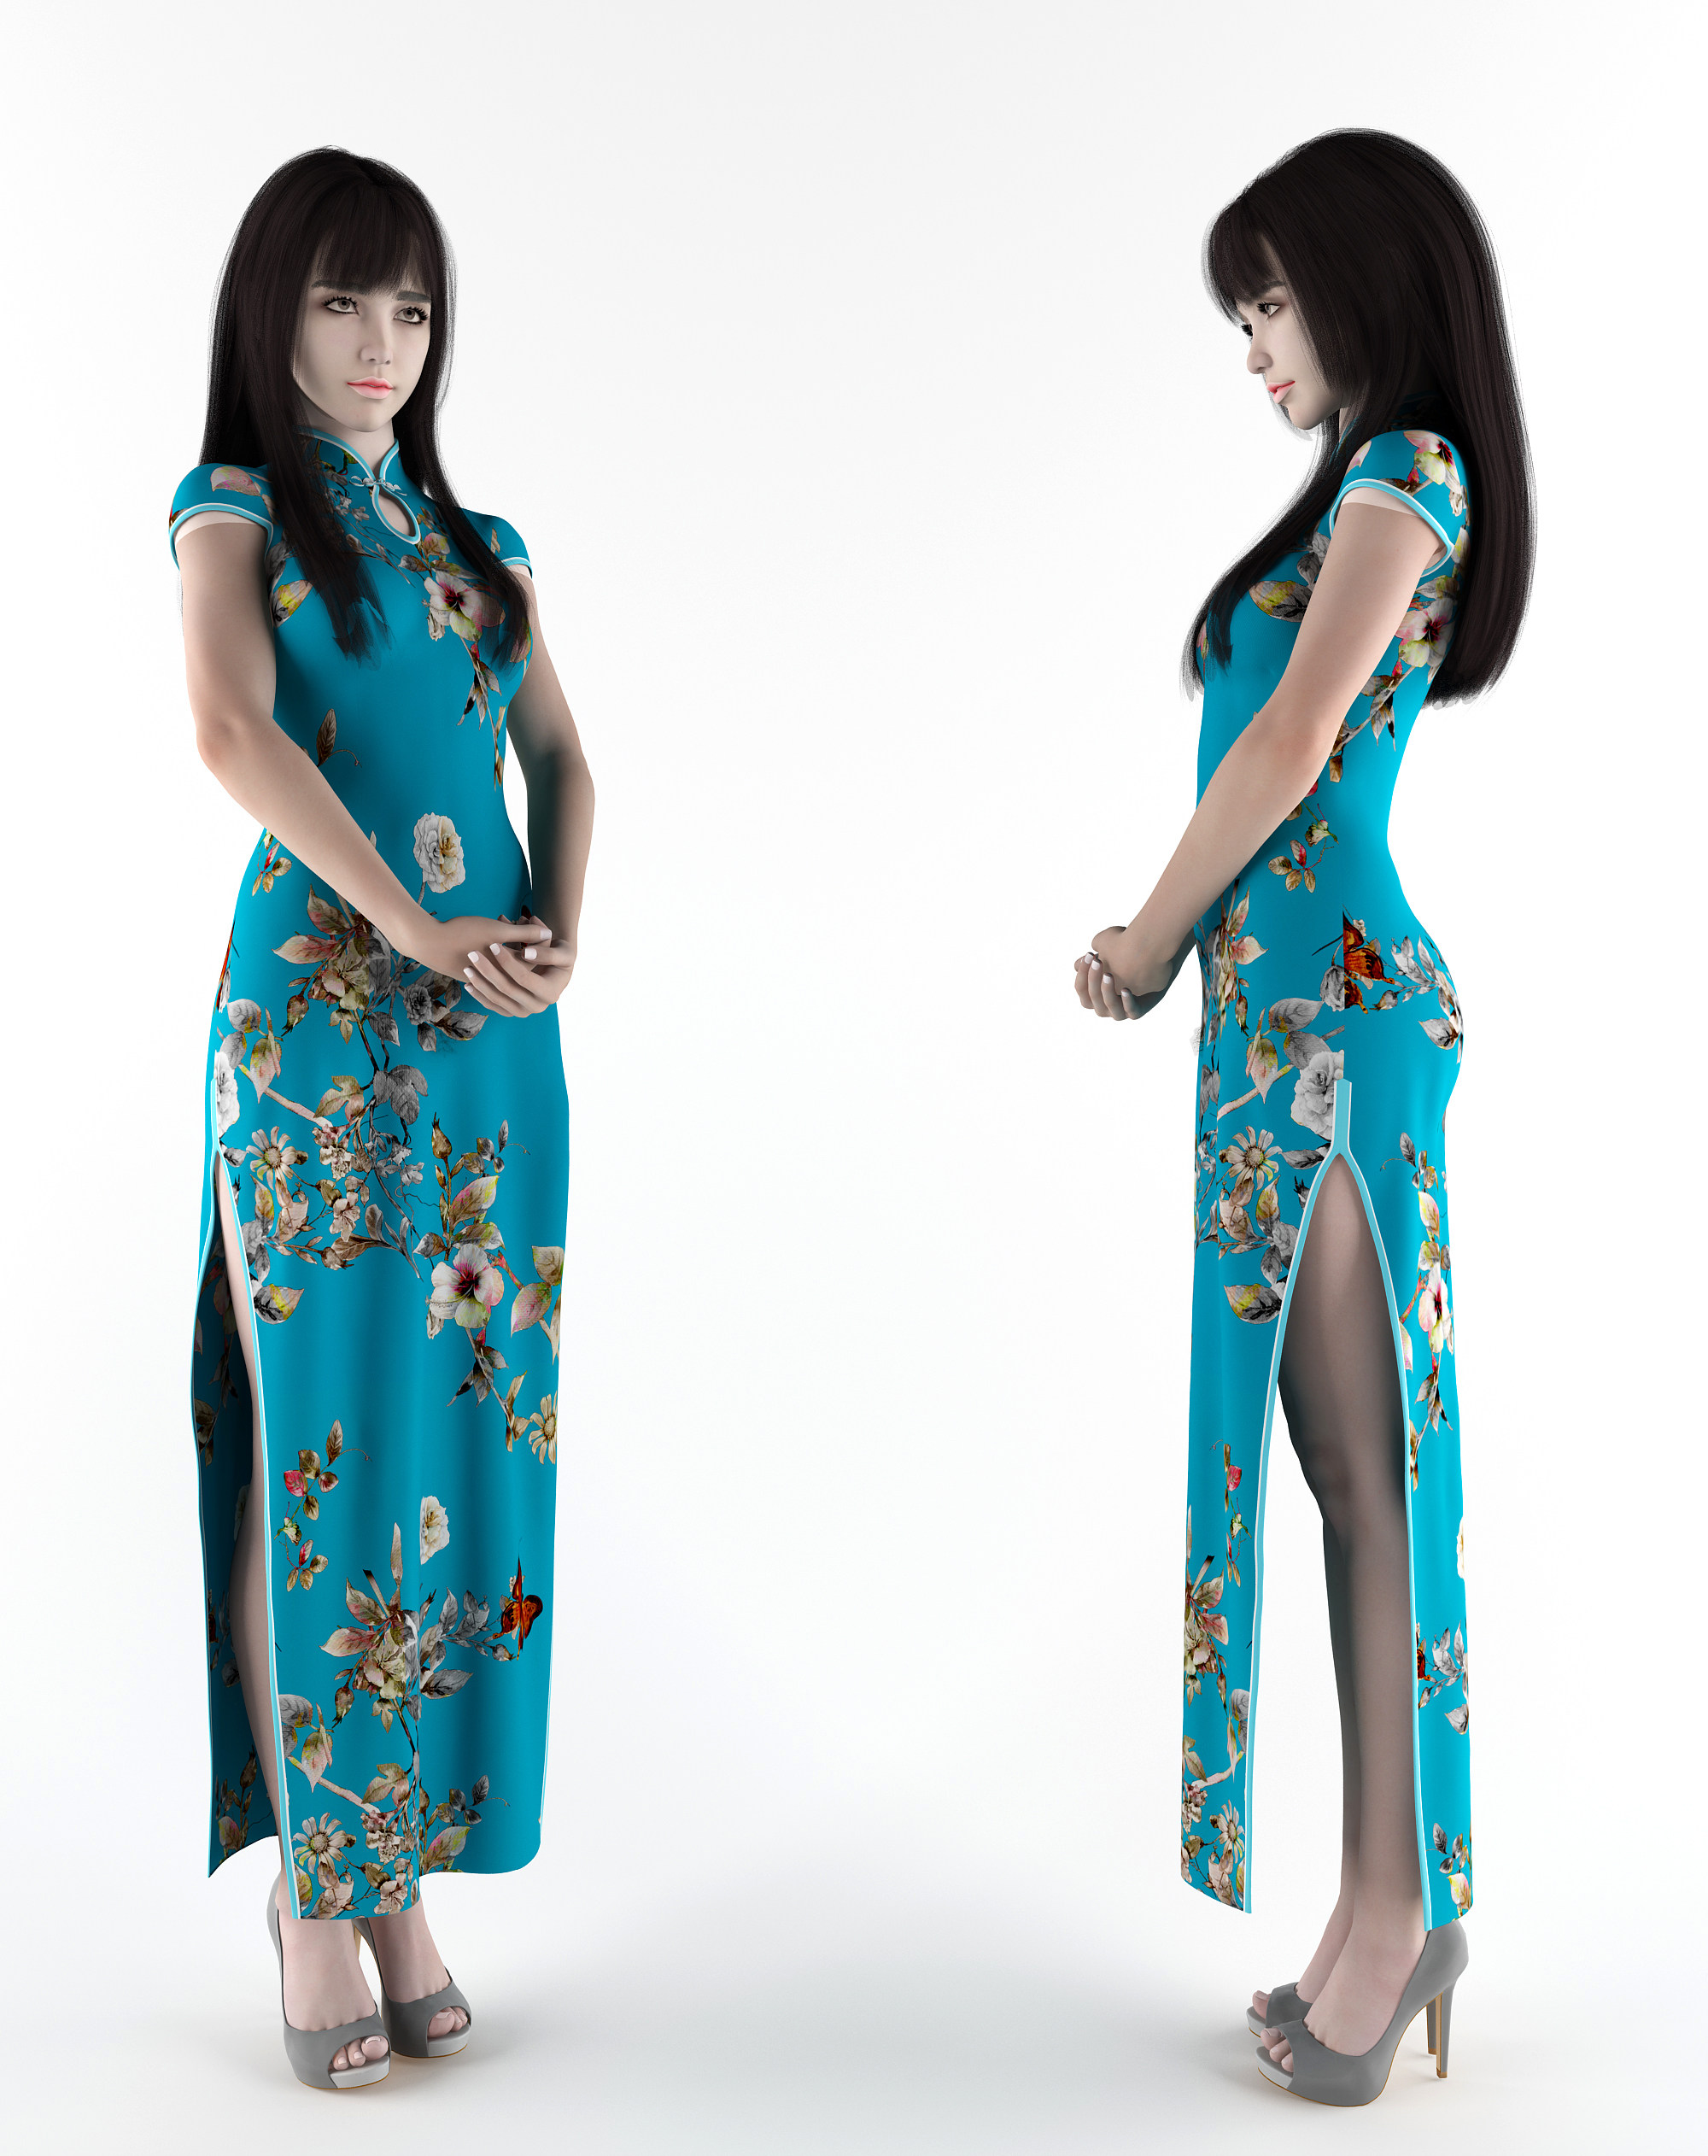 旗袍女装服装模特人物模特3d模型下载